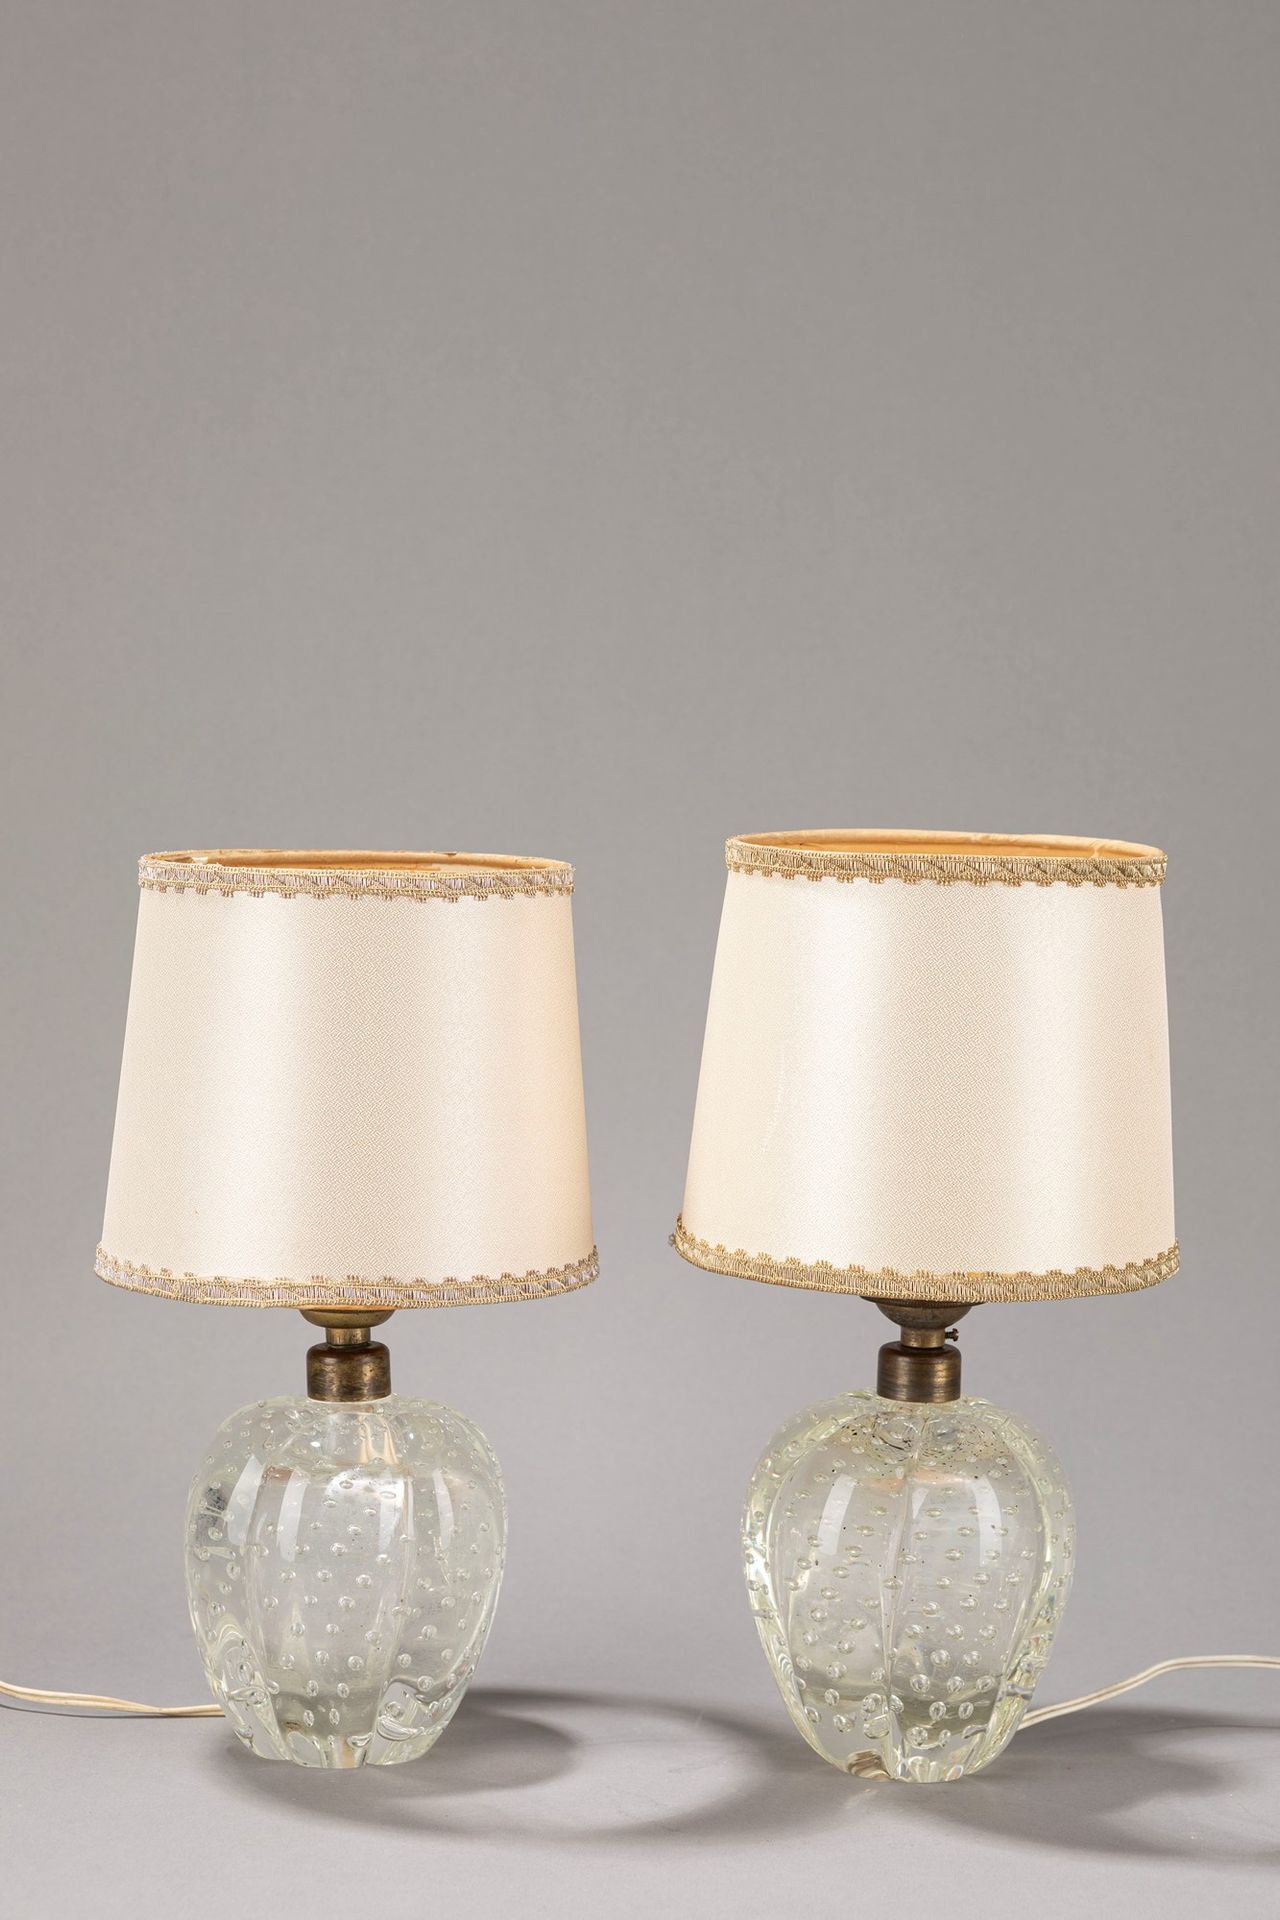 Barovier e Toso Dos lámparas de mesa, 1940 aprox.

H tot 25,5 cm
vidrio bullican&hellip;